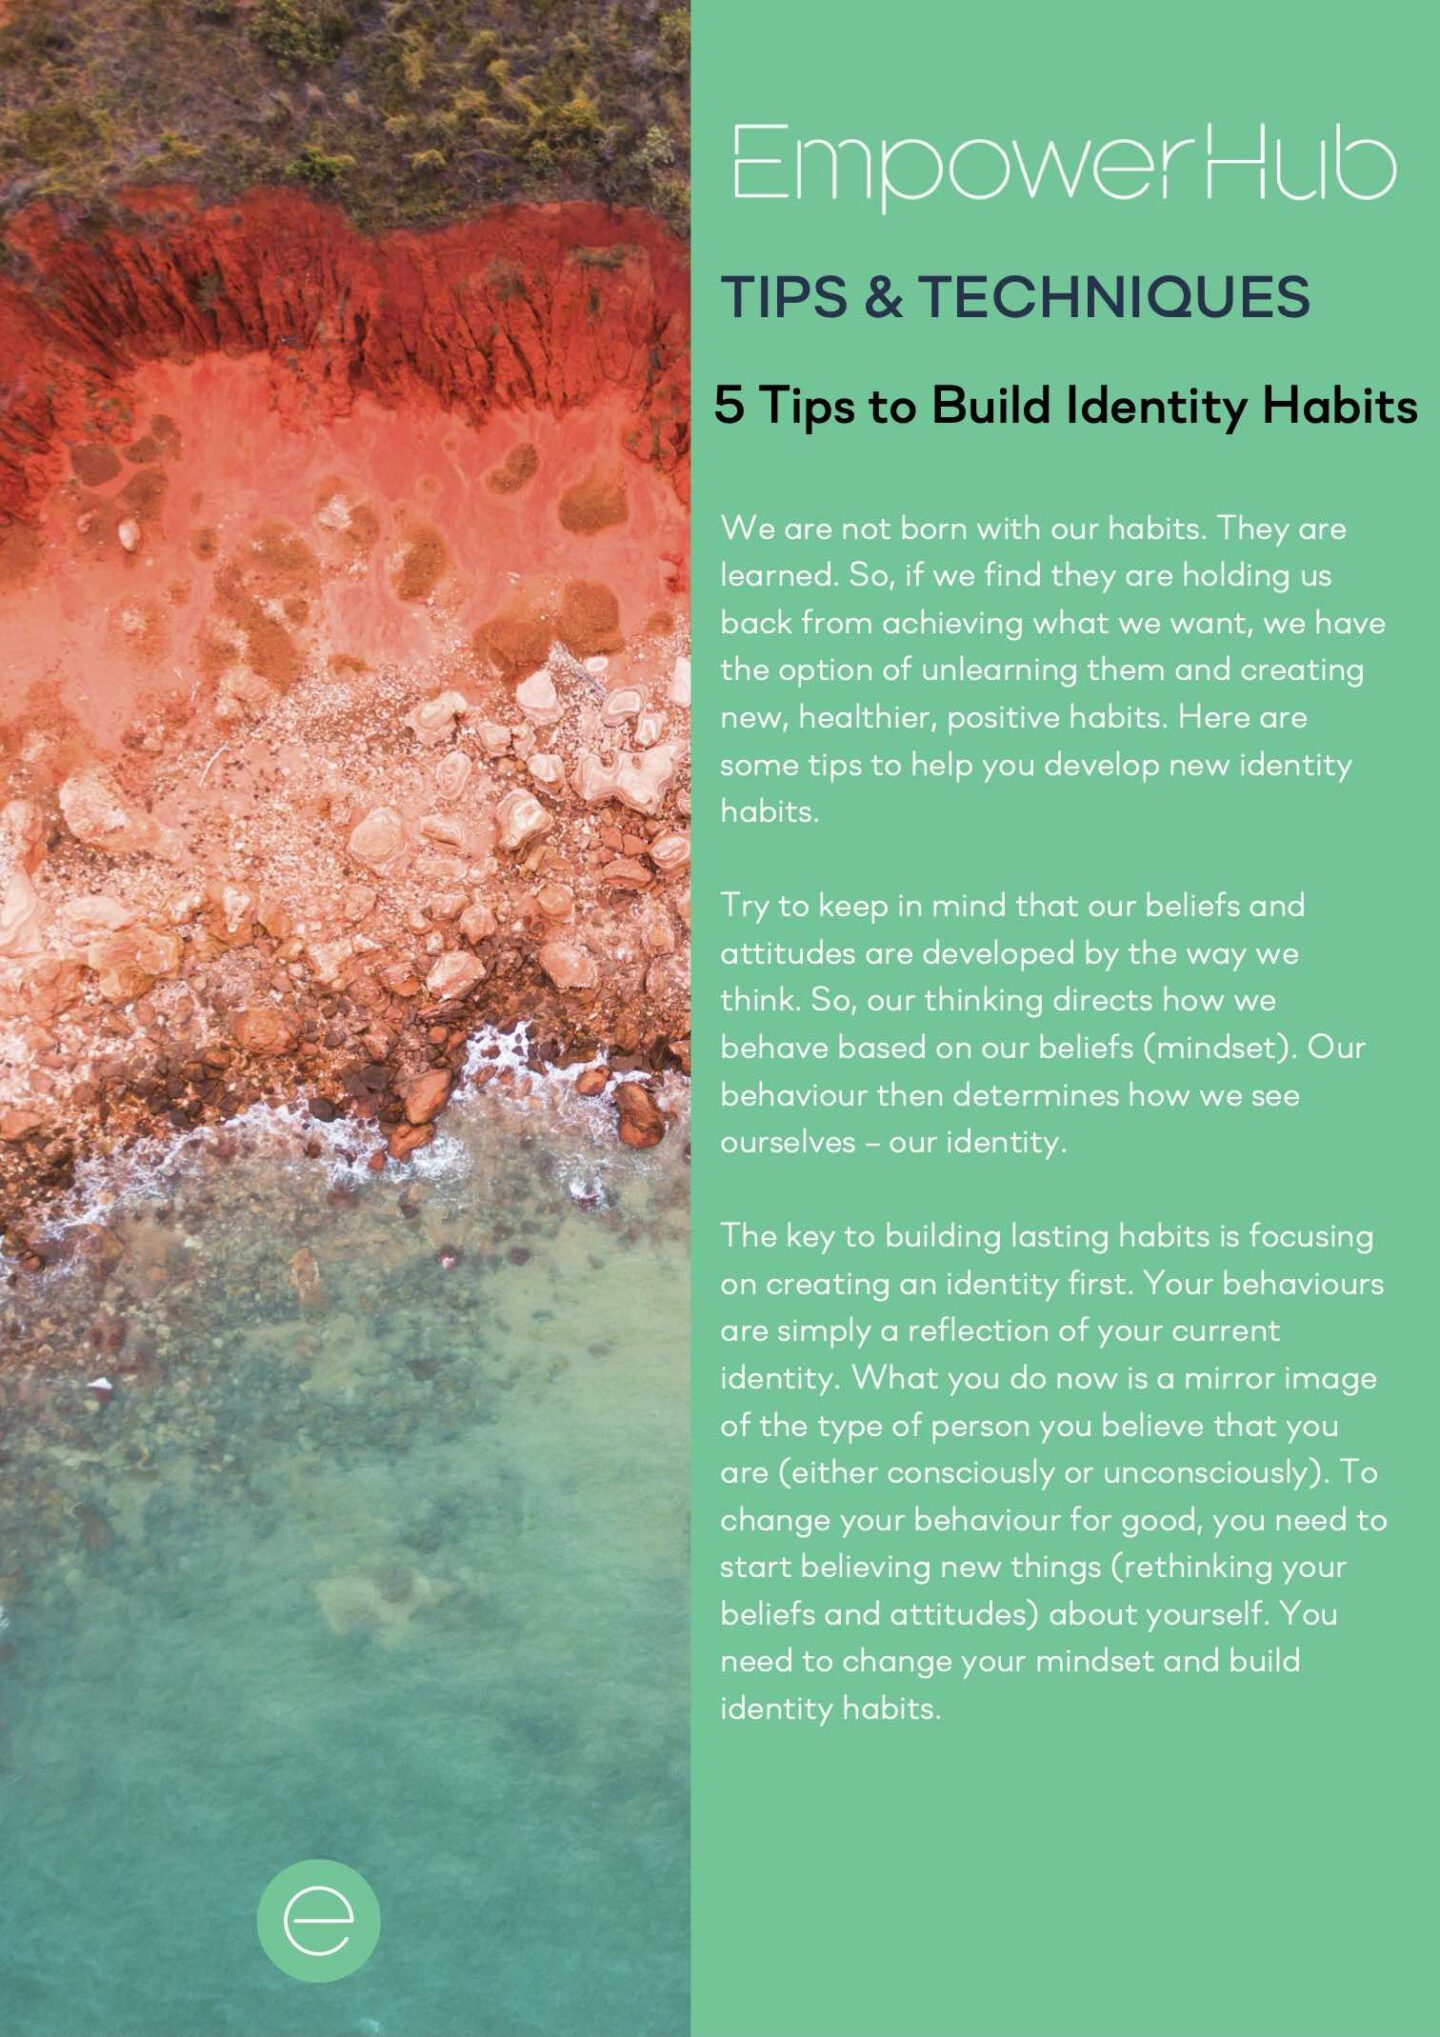 5 Tips to Buid Identity Habits